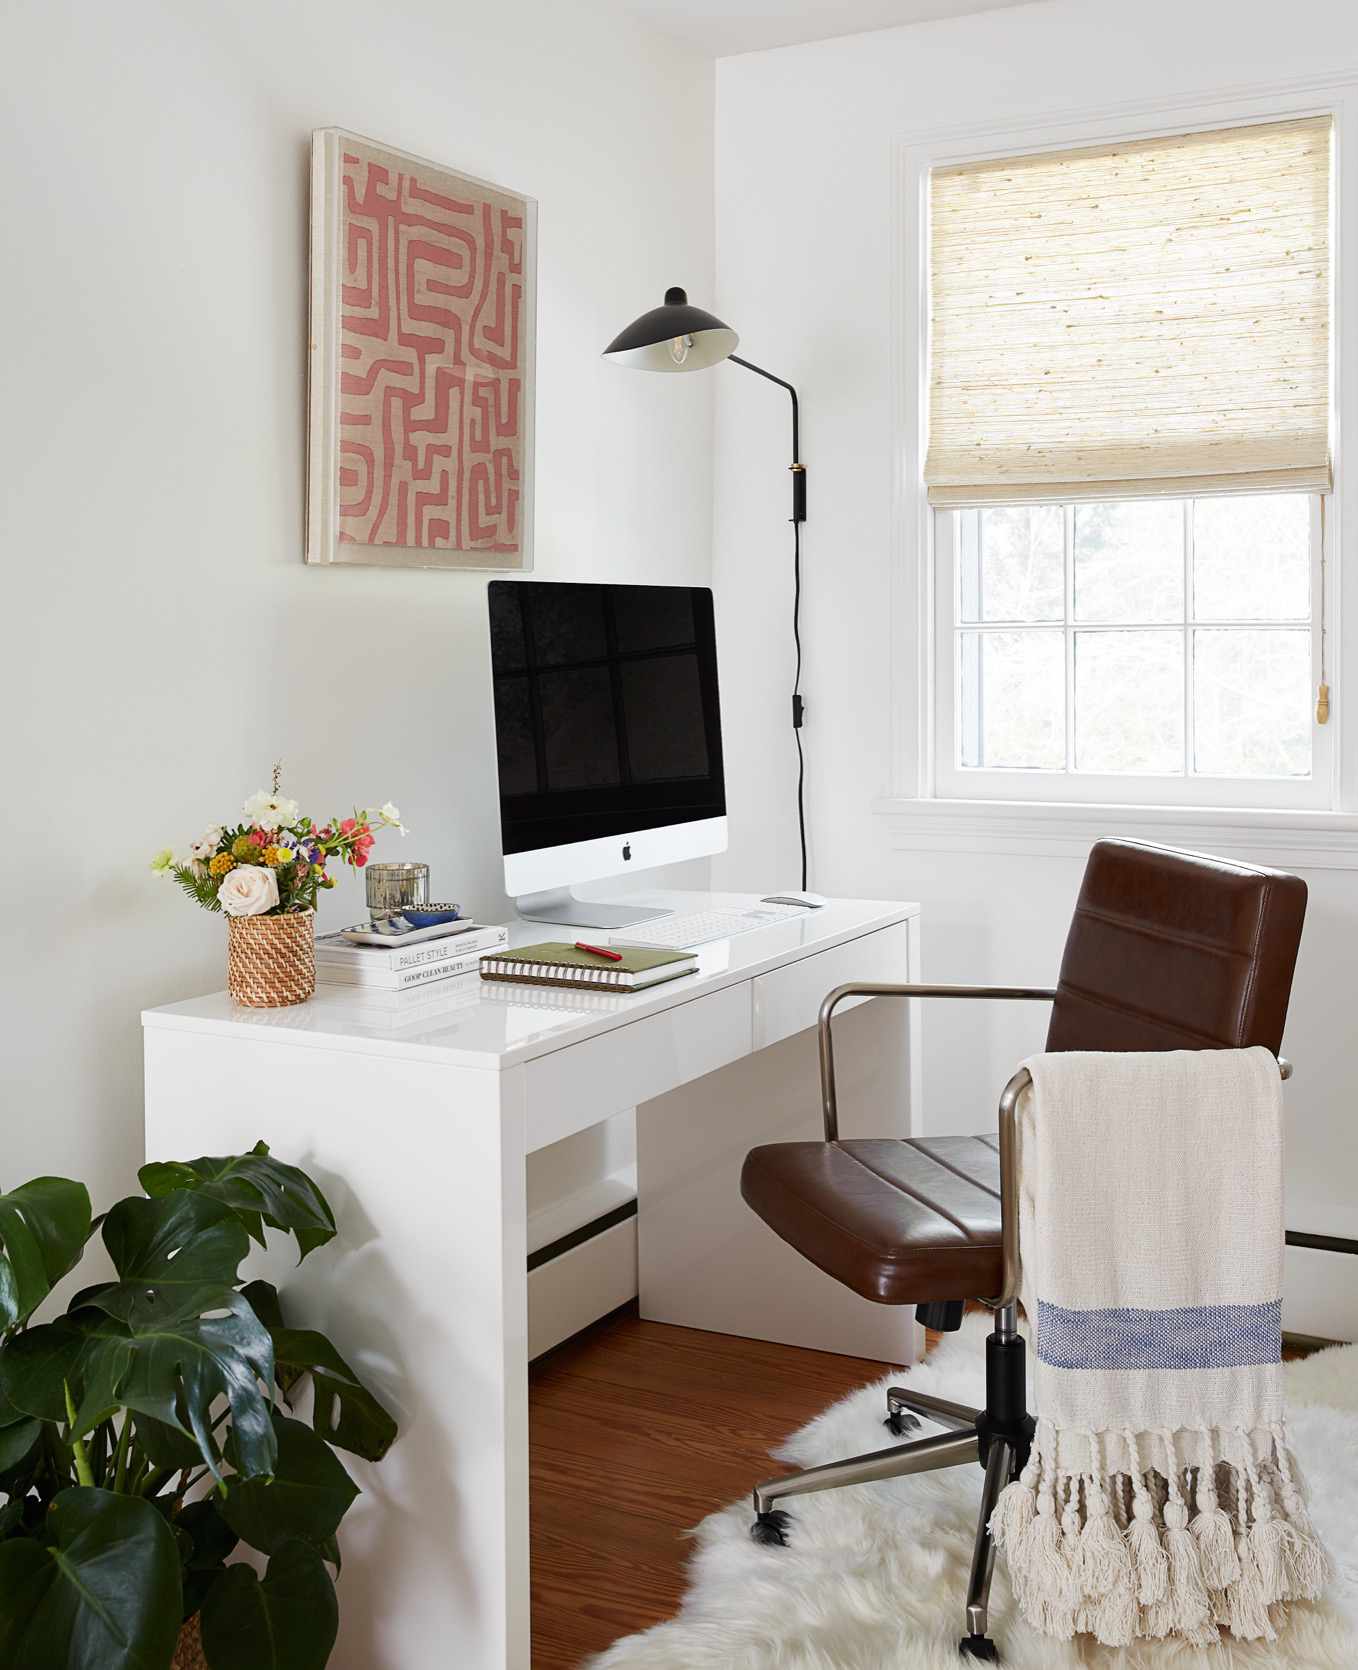 Uma mesa de escritório contemporânea branca abriga um computador apple abaixo de uma obra de arte emoldurada na cor pêssego